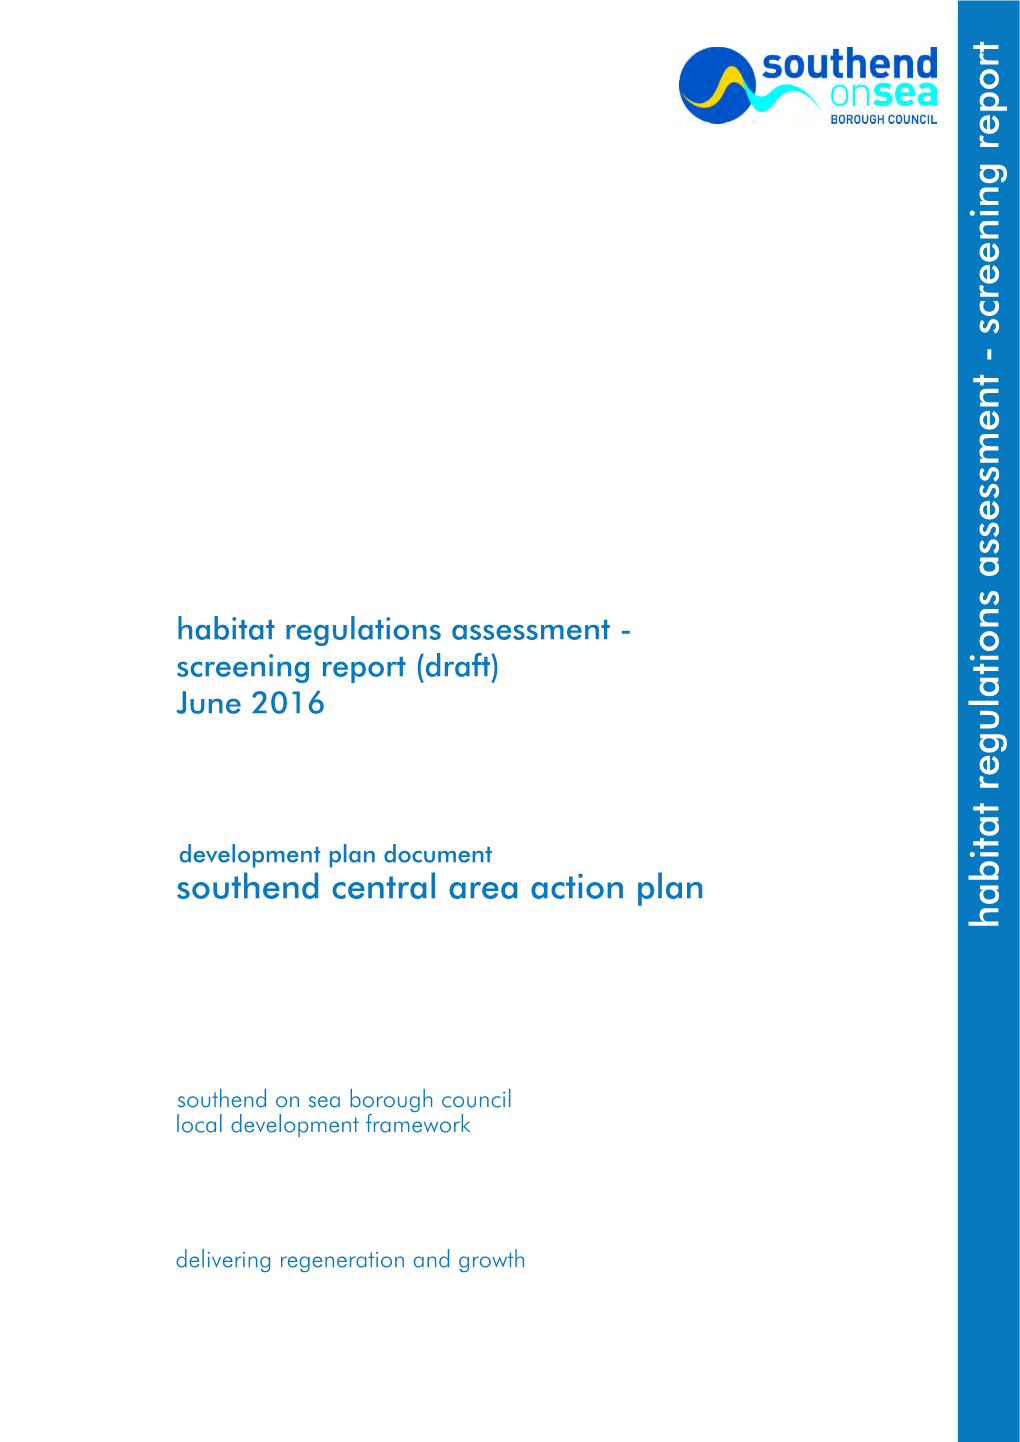 Habitat Regulations Assessment - Screening Report (Draft) June 2016